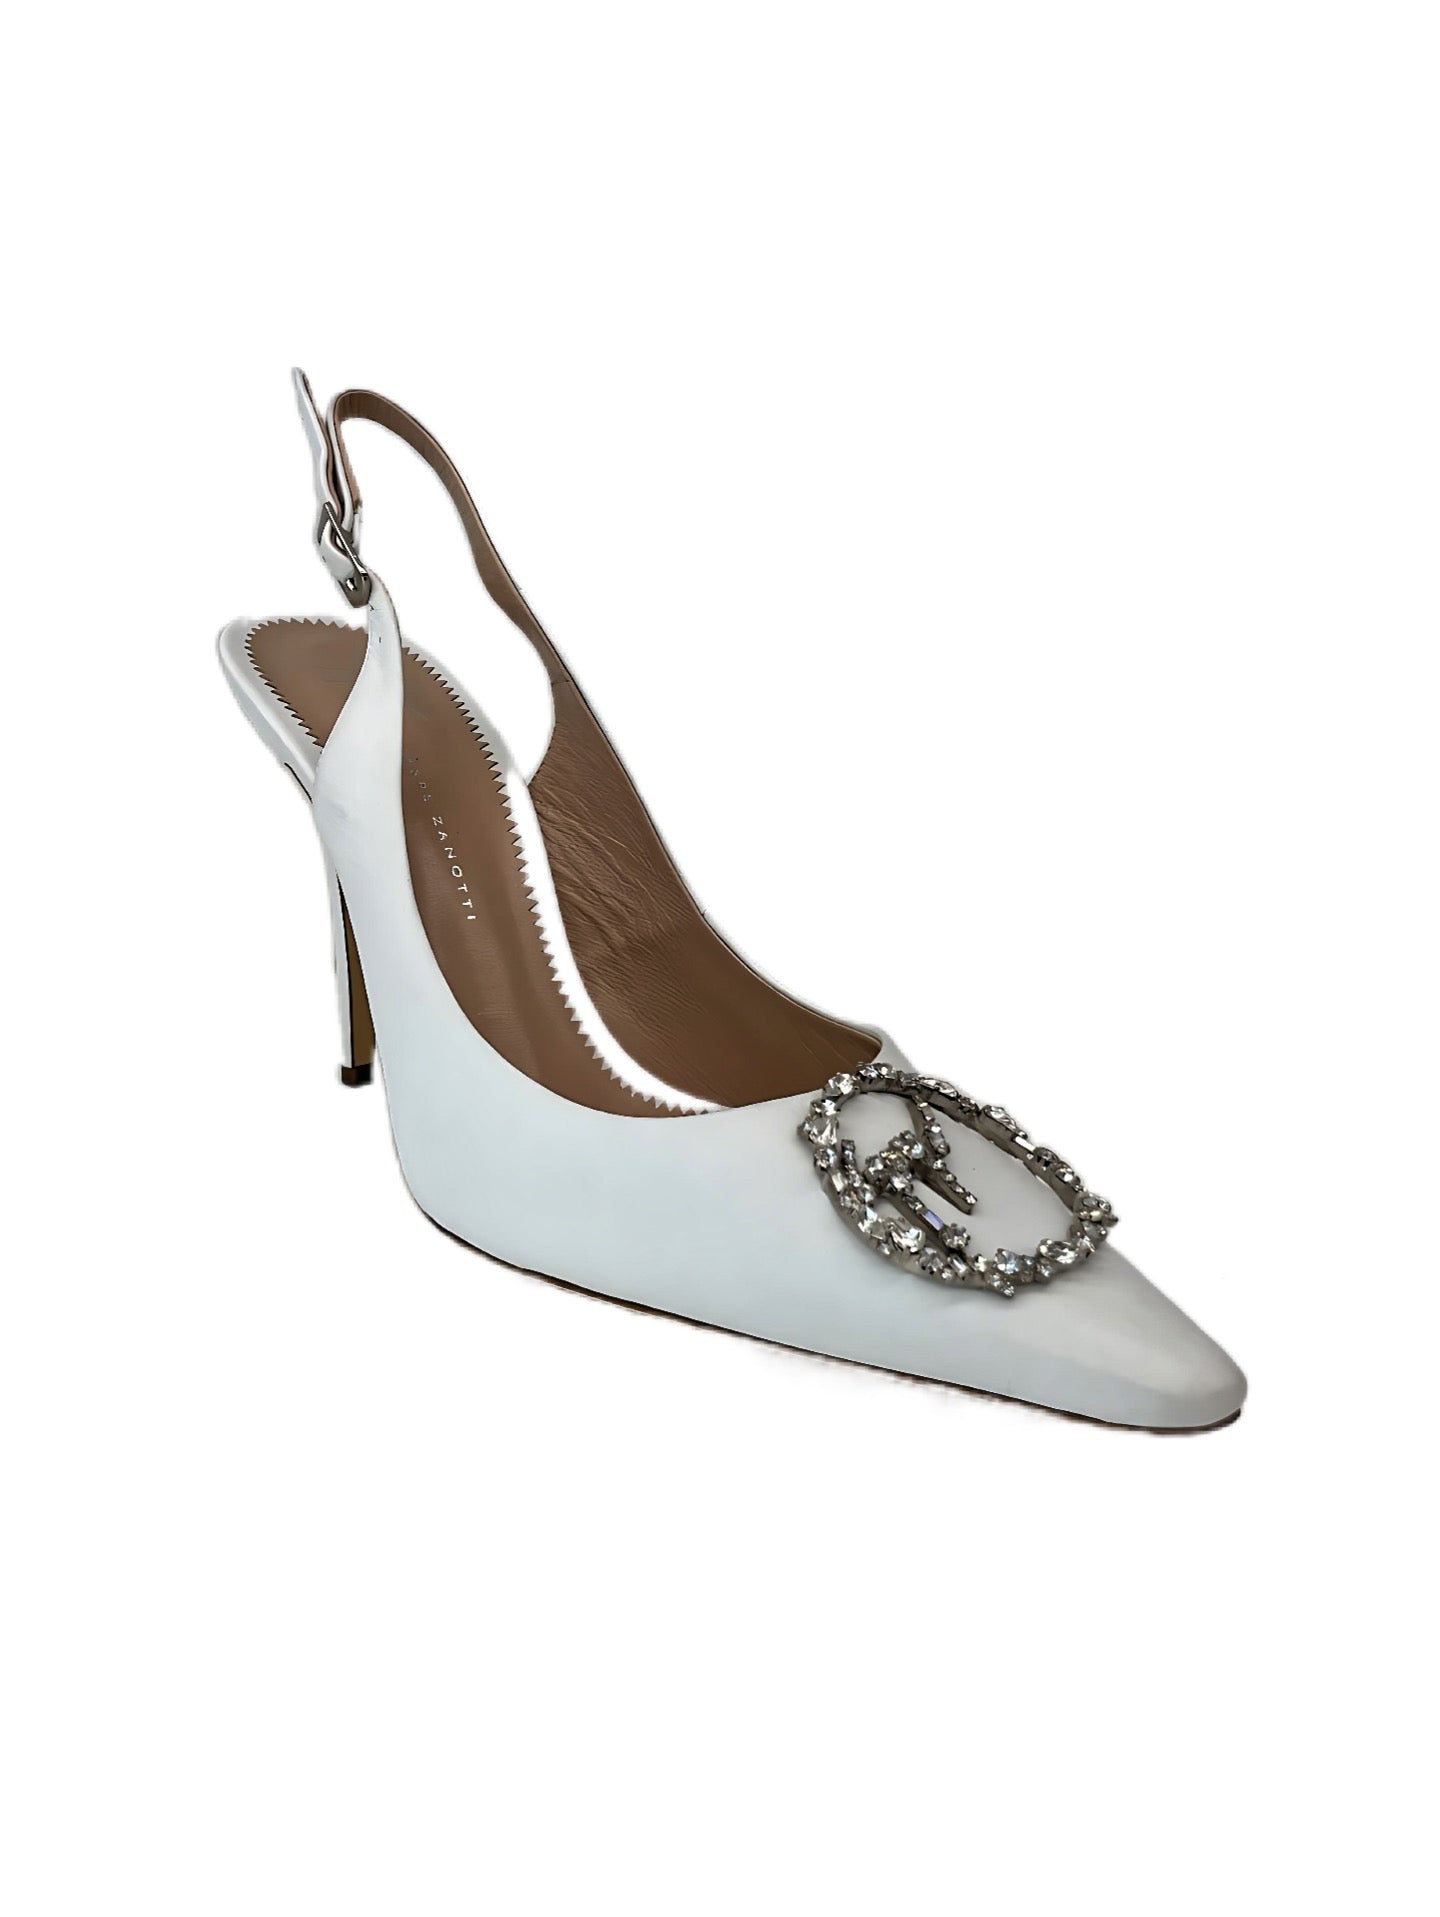 Giuseppe Zanotti Embellished White Sling-Back Heels. Size: 39.5